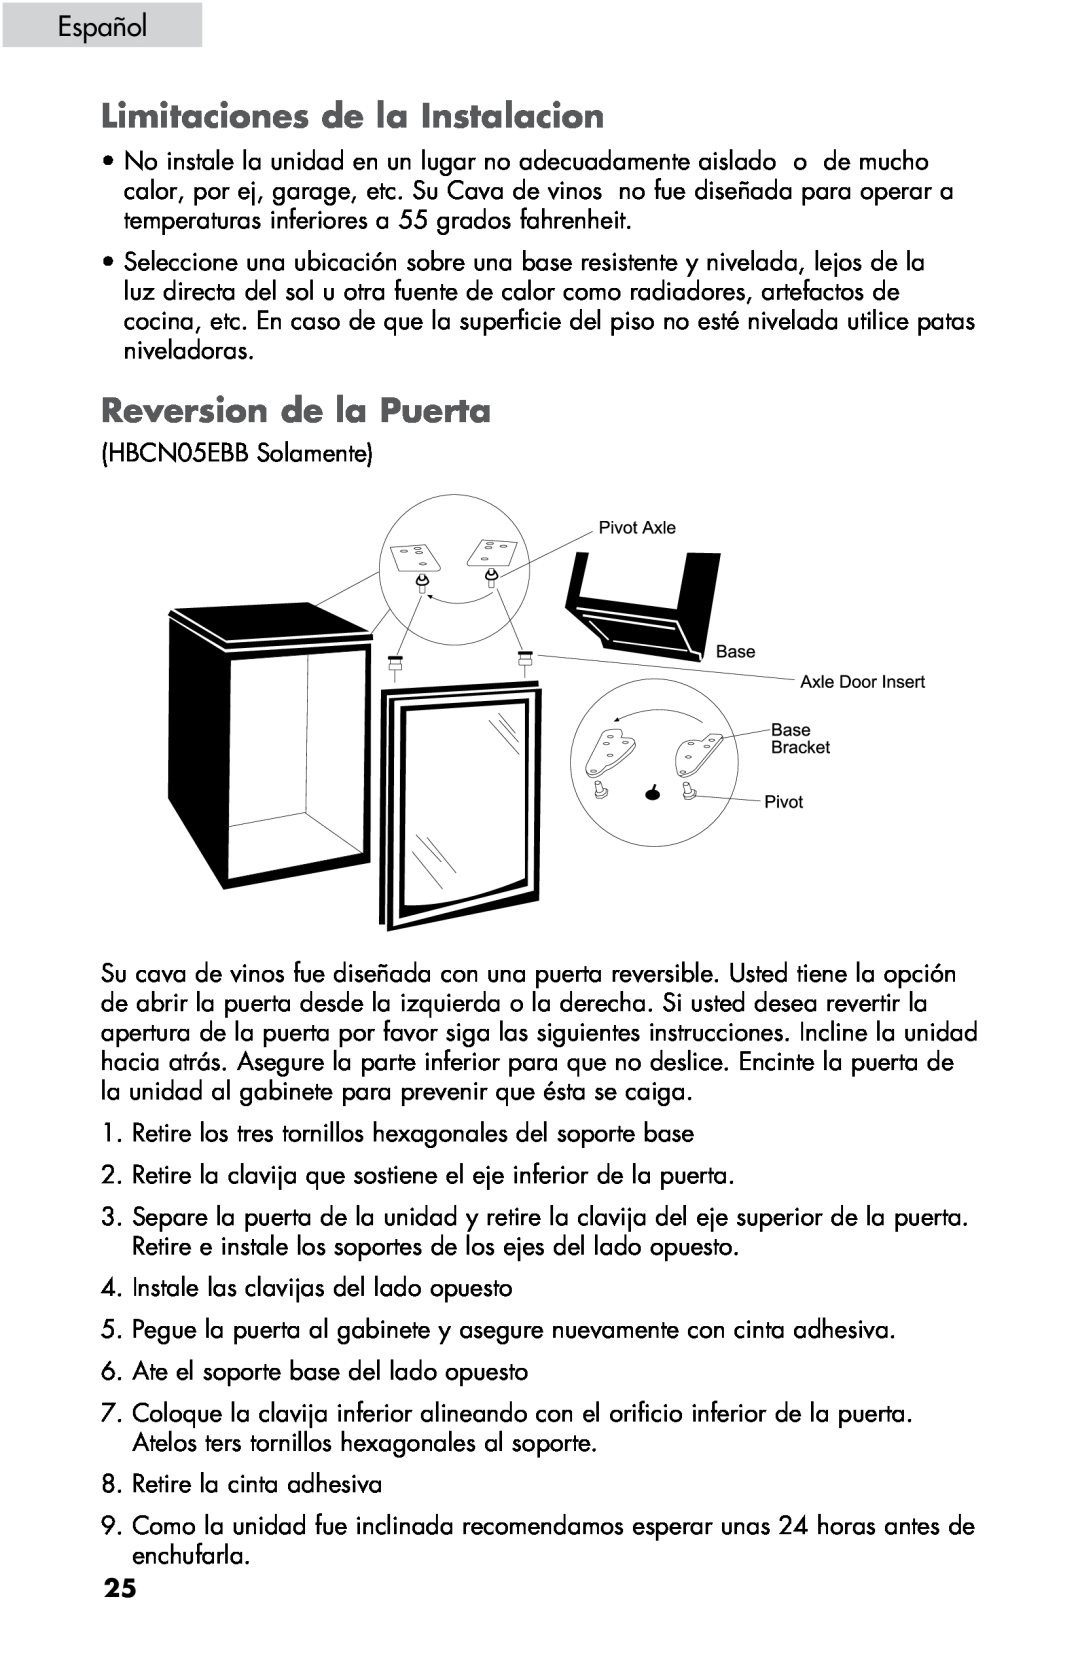 Haier ZHBCN05FVS user manual Limitaciones de la Instalacion, Reversion de la Puerta, Español 